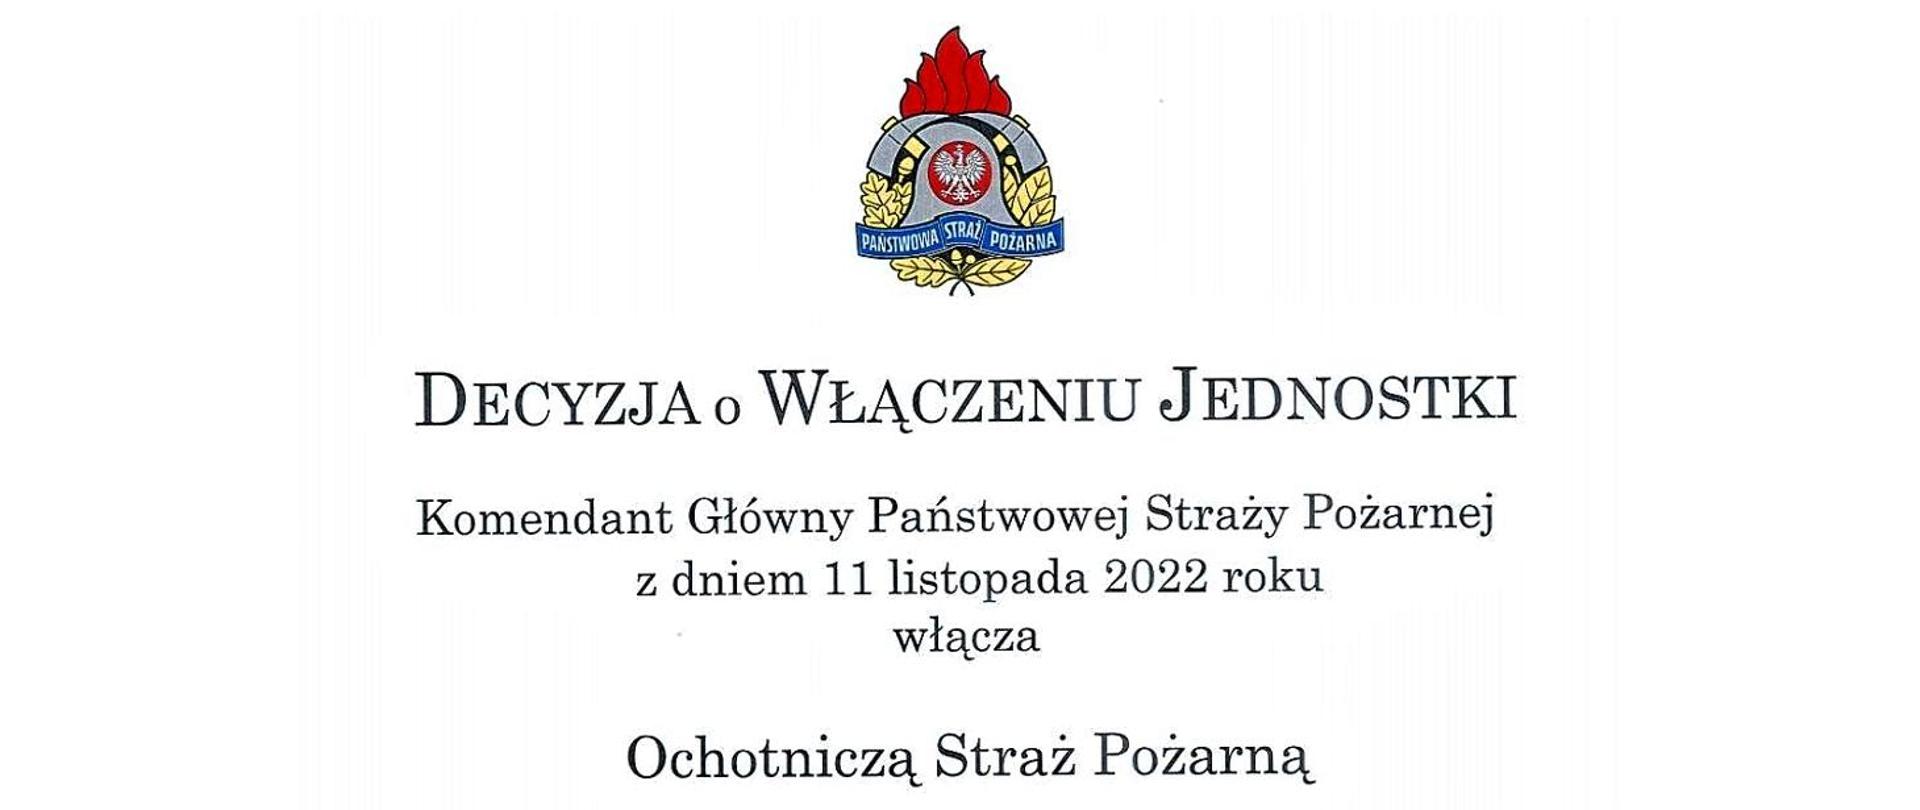 Baner z napisem: Decyzja o włączeniu jednostki. Komendant Główny Państwowej Straży Pożarnej z dniem 11 listopada 2022 roku włącza Ochotniczą Straż Pożarną